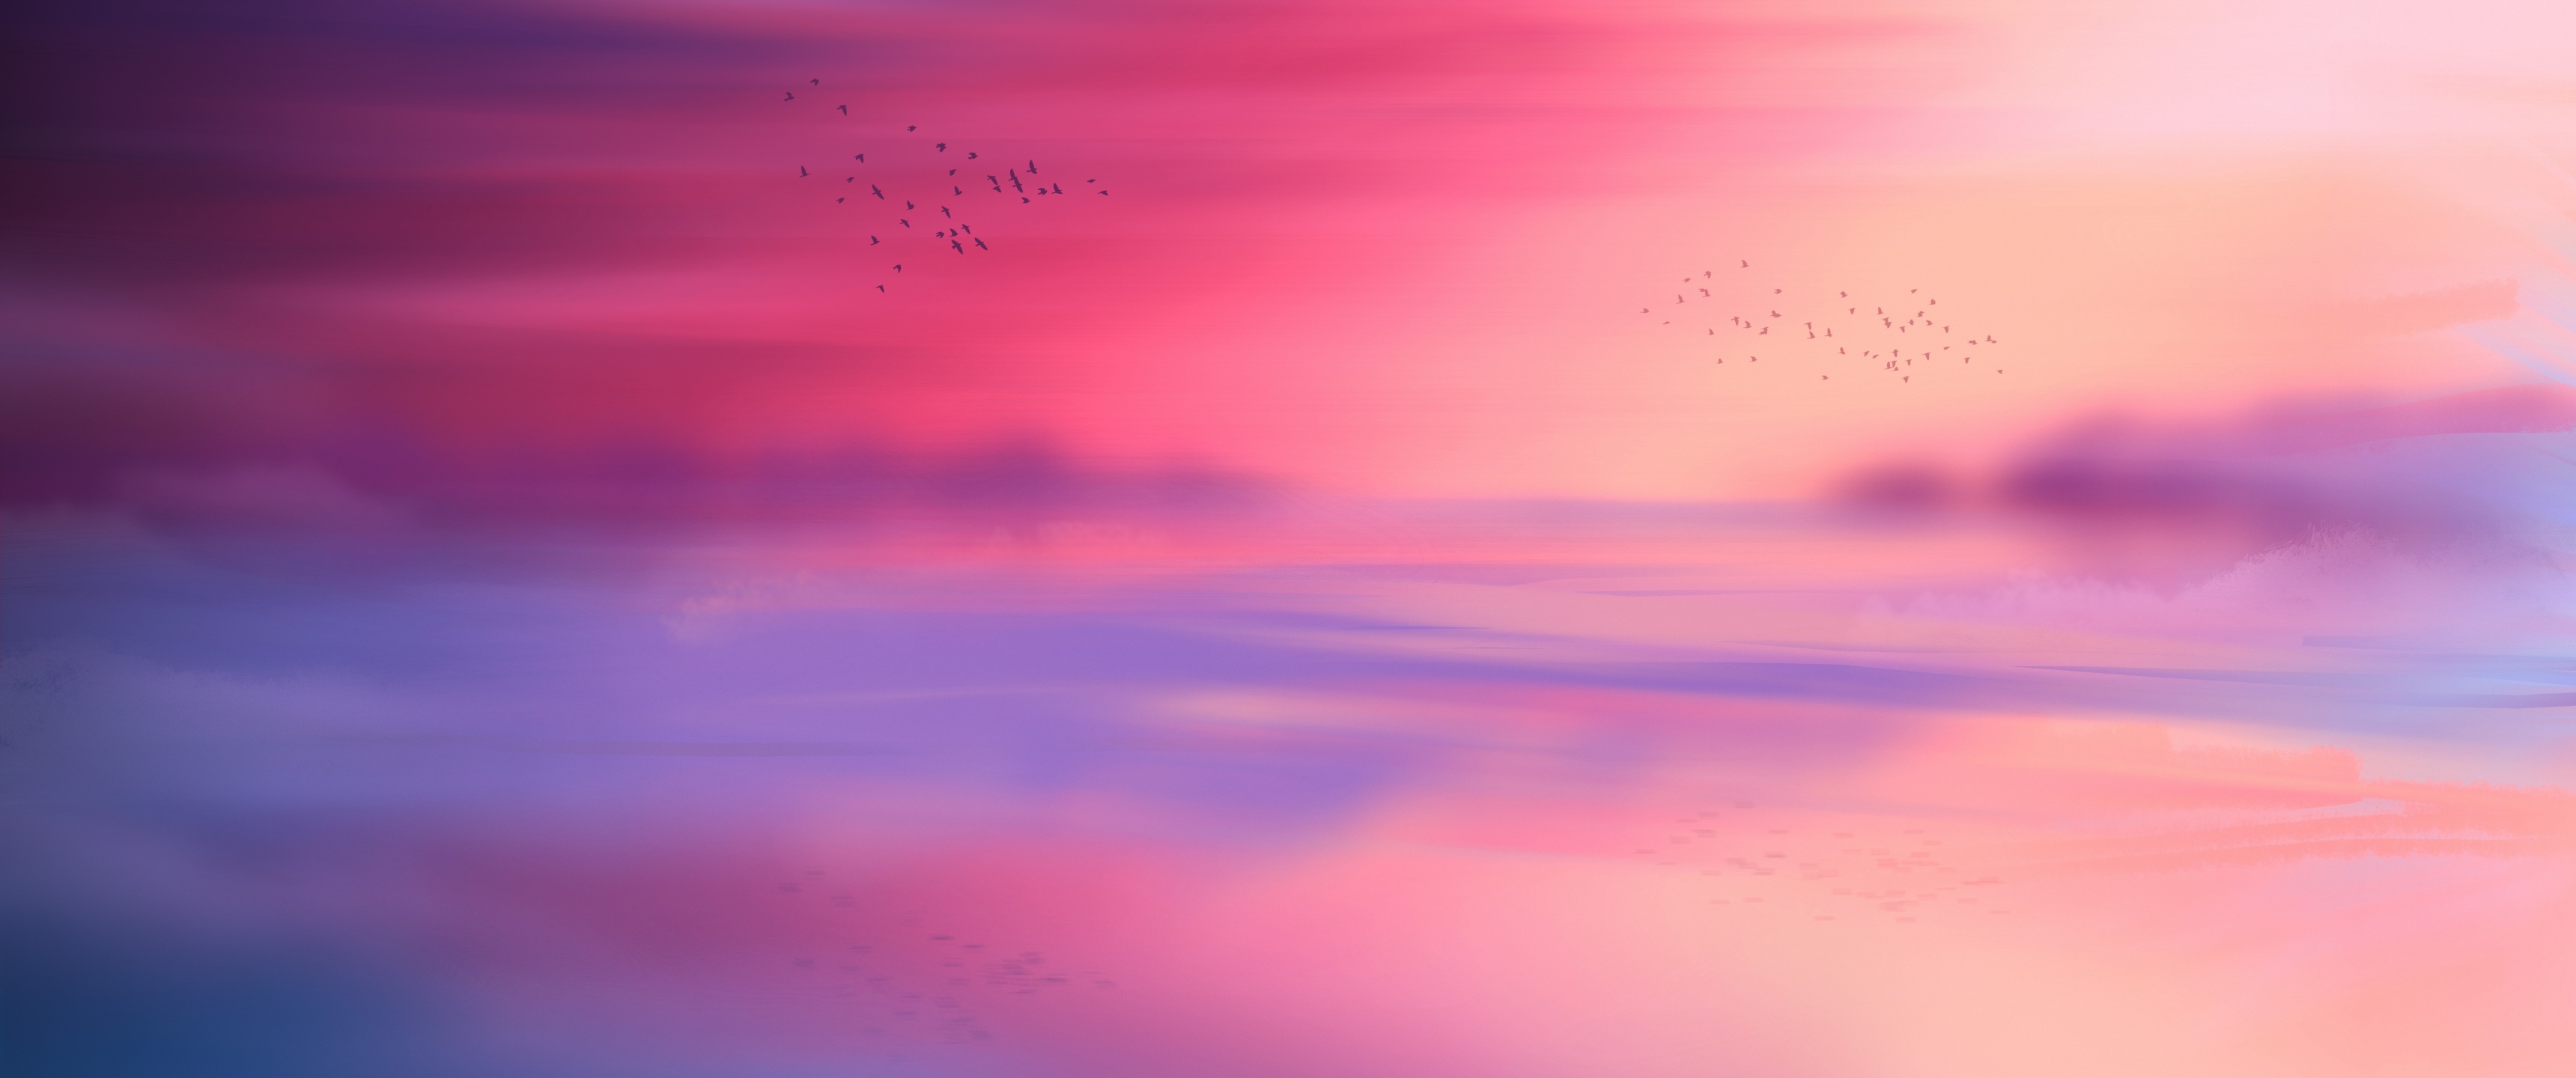 Bức ảnh hình nền 4k với bầu trời hồng đẹp, thiên nhiên tuyệt vời và màu hồng nổi bật sẽ khiến bạn bị thu hút ngay lập tức. Hãy hâm nóng tinh thần của mình bằng cách truy cập vào bức hình tuyệt đẹp này.